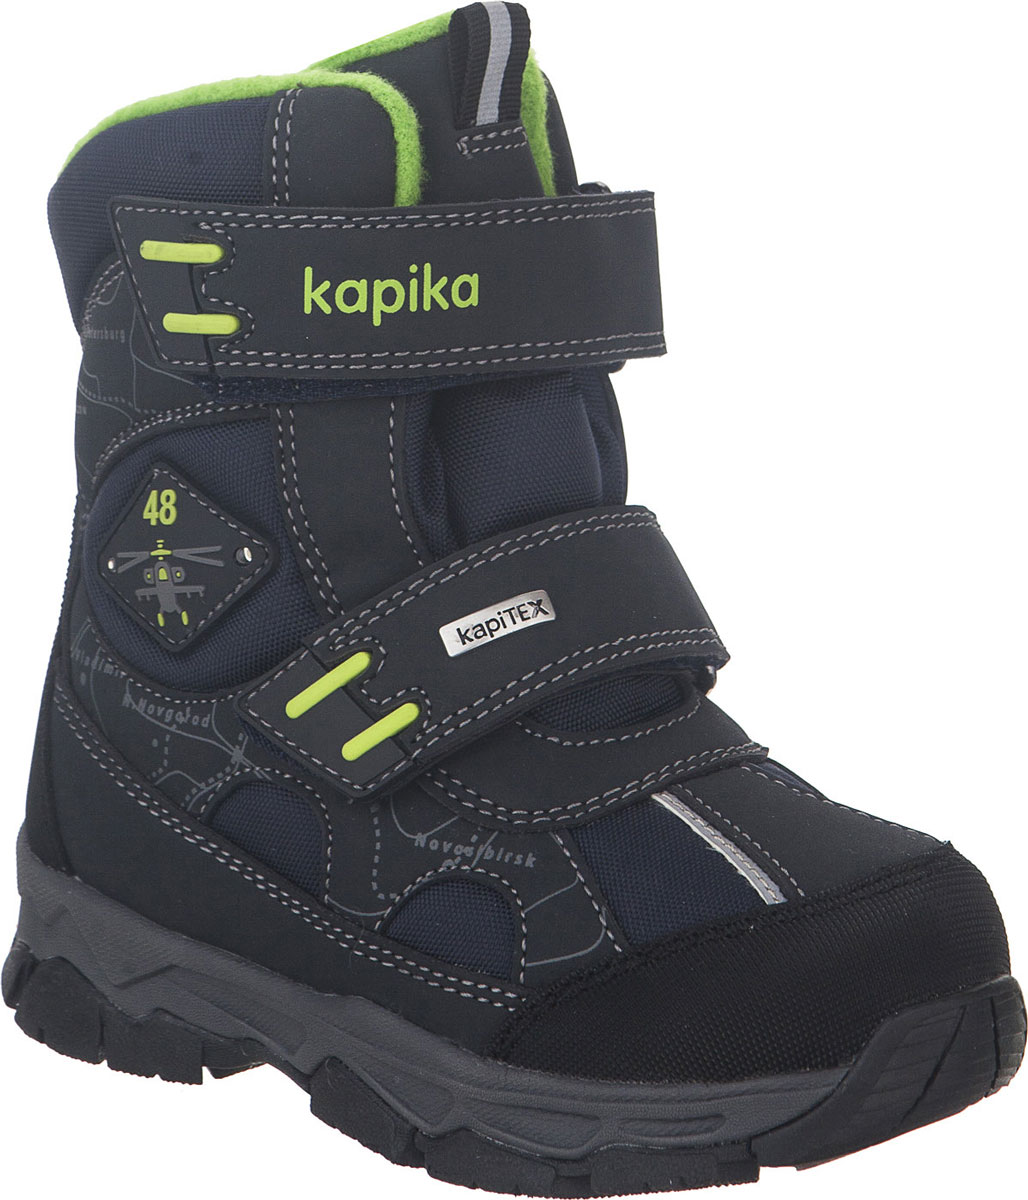 Ботинки для мальчика Kapika, цвет: темно-синий, салатовый. 42229-1. Размер 30